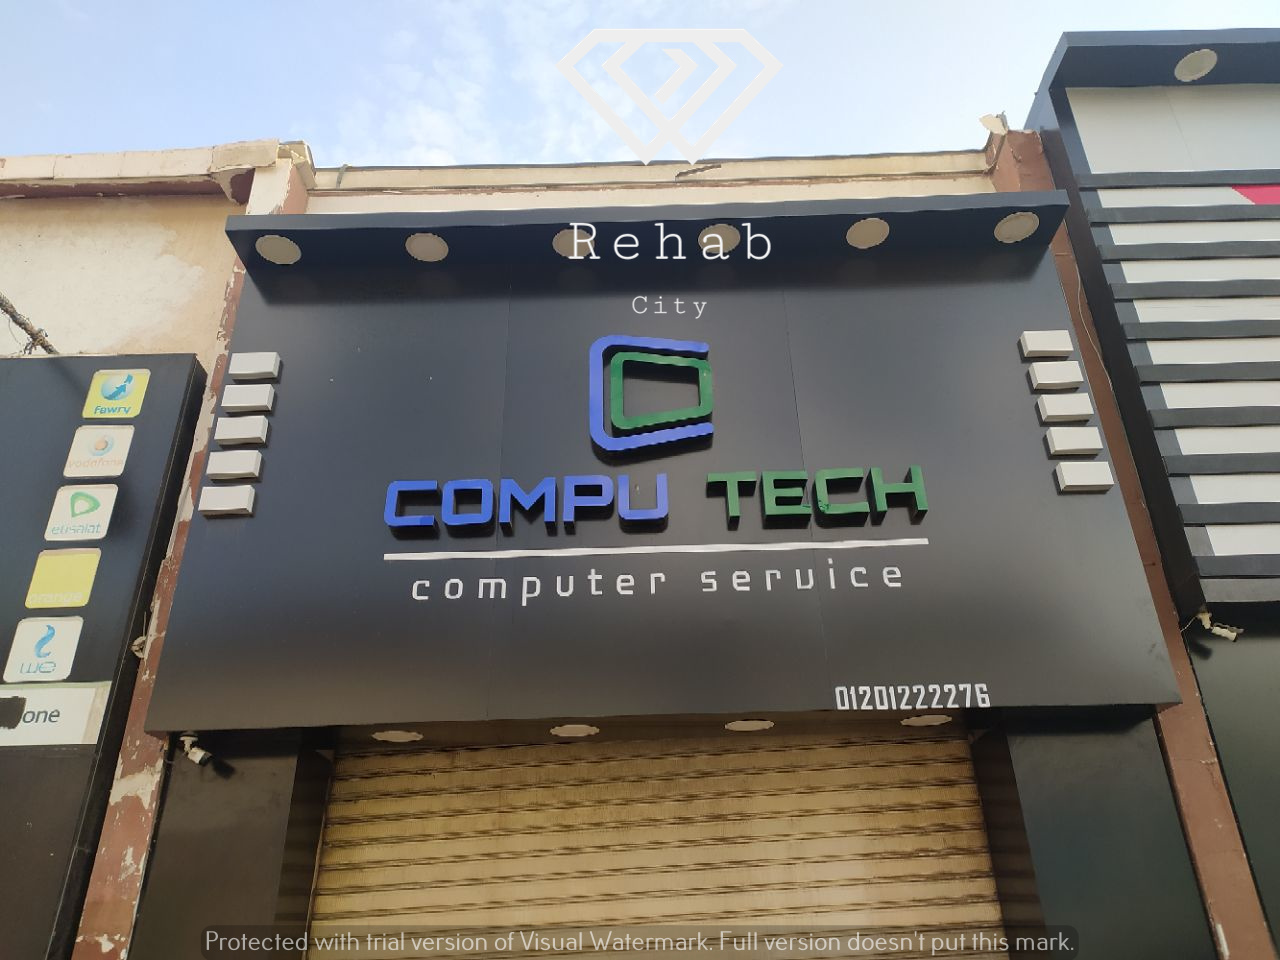 Compu tsech